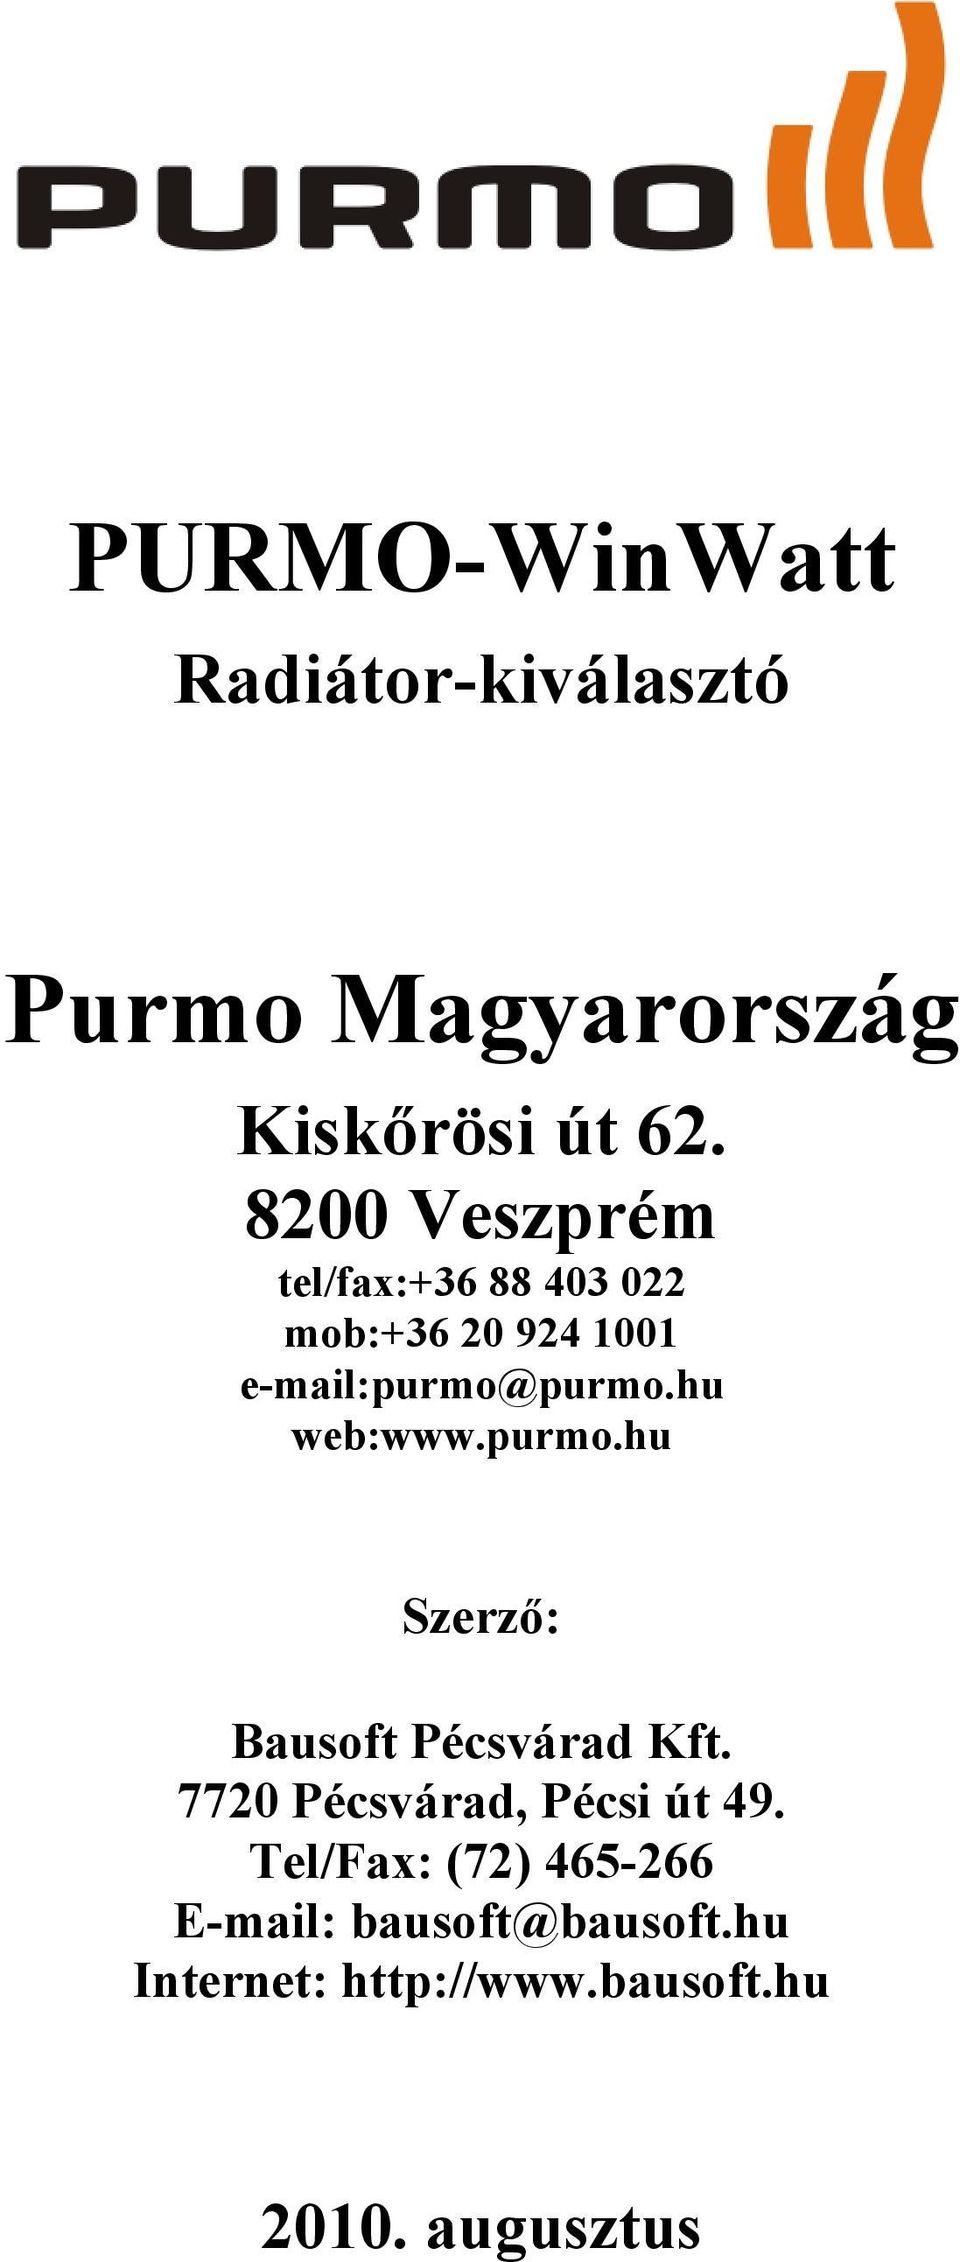 hu web:www.purmo.hu Szerző: Bausoft Pécsvárad Kft. 7720 Pécsvárad, Pécsi út 49.